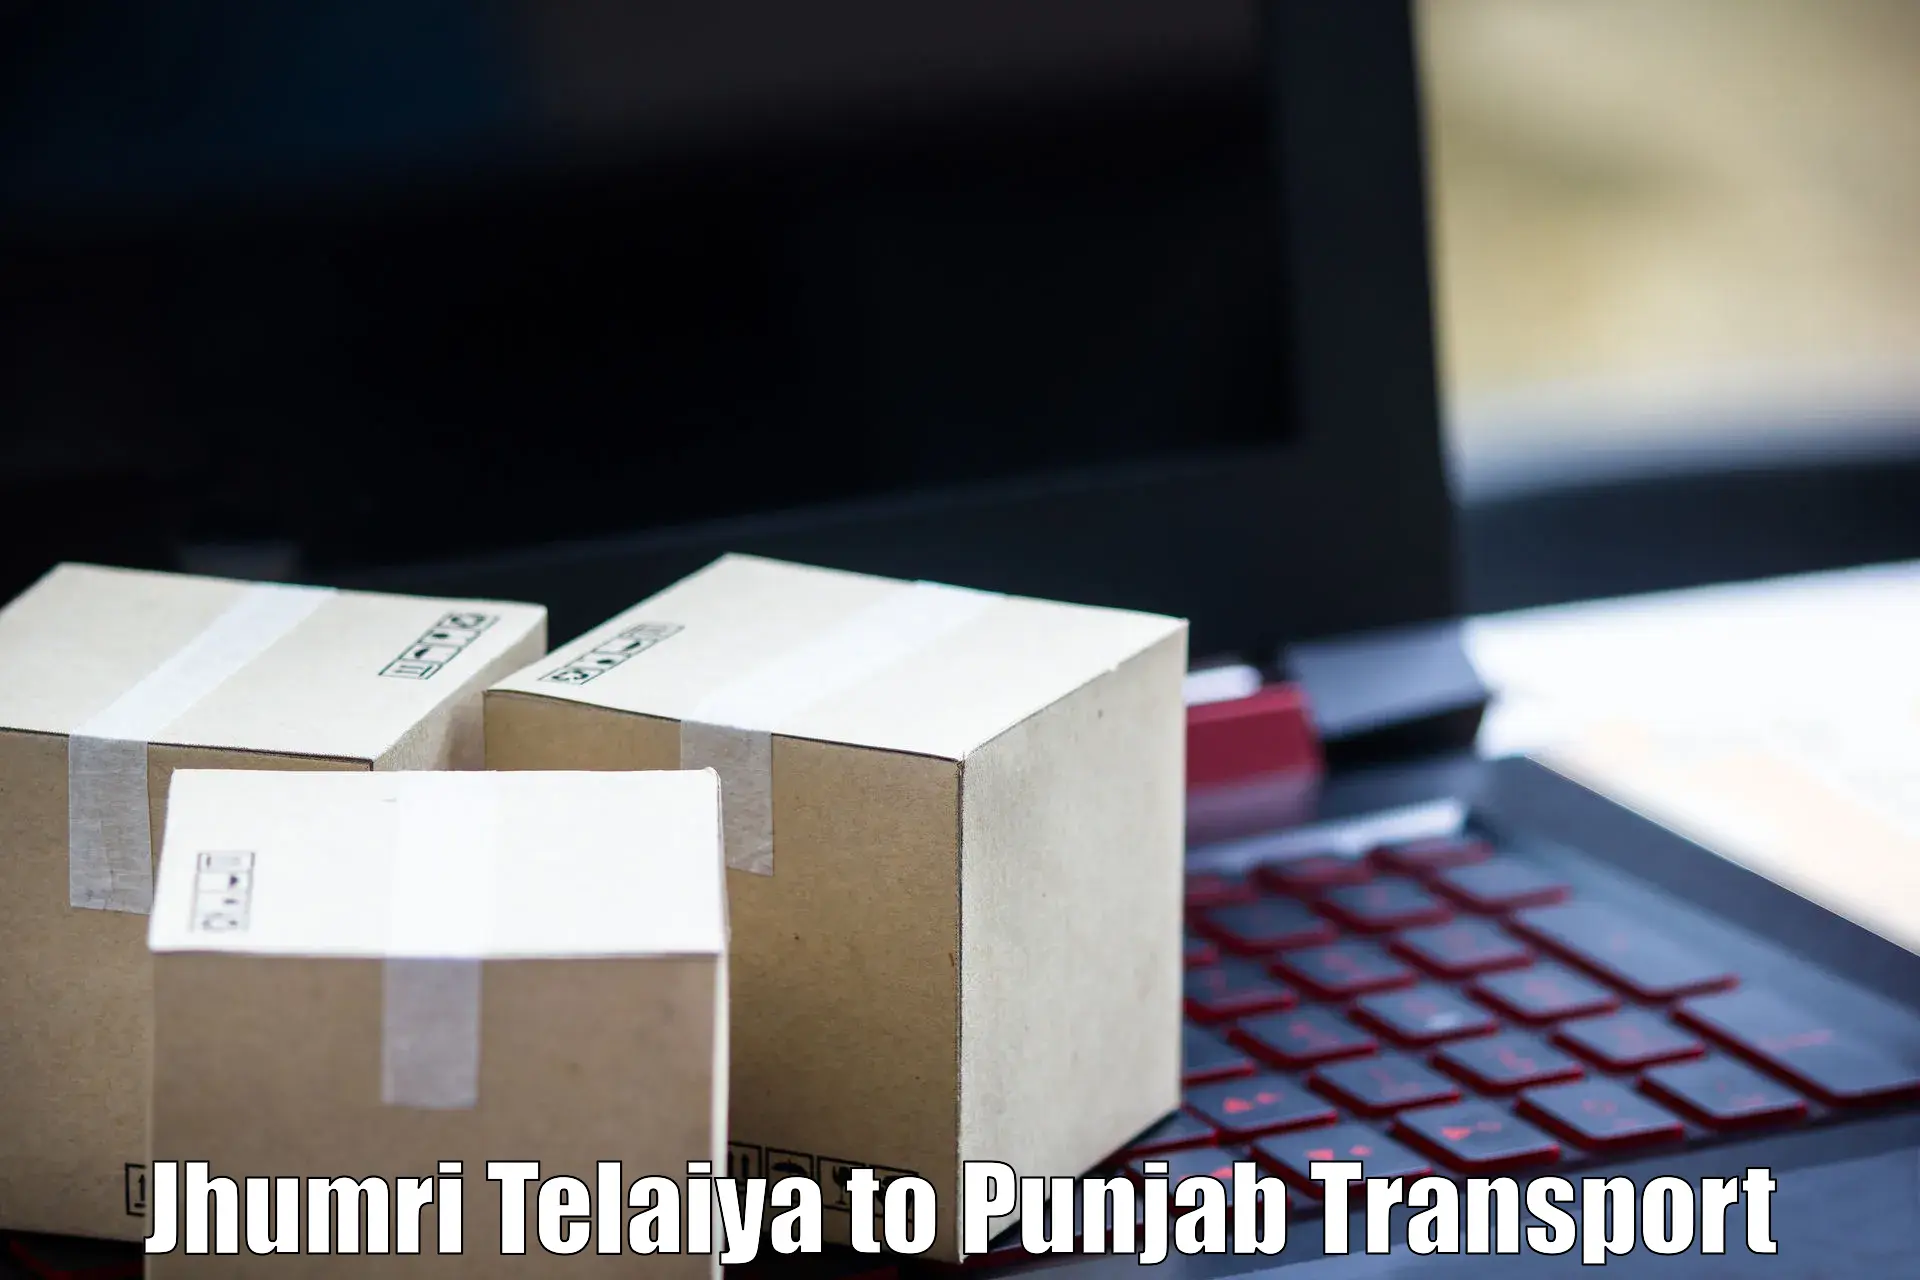 Land transport services Jhumri Telaiya to Abohar